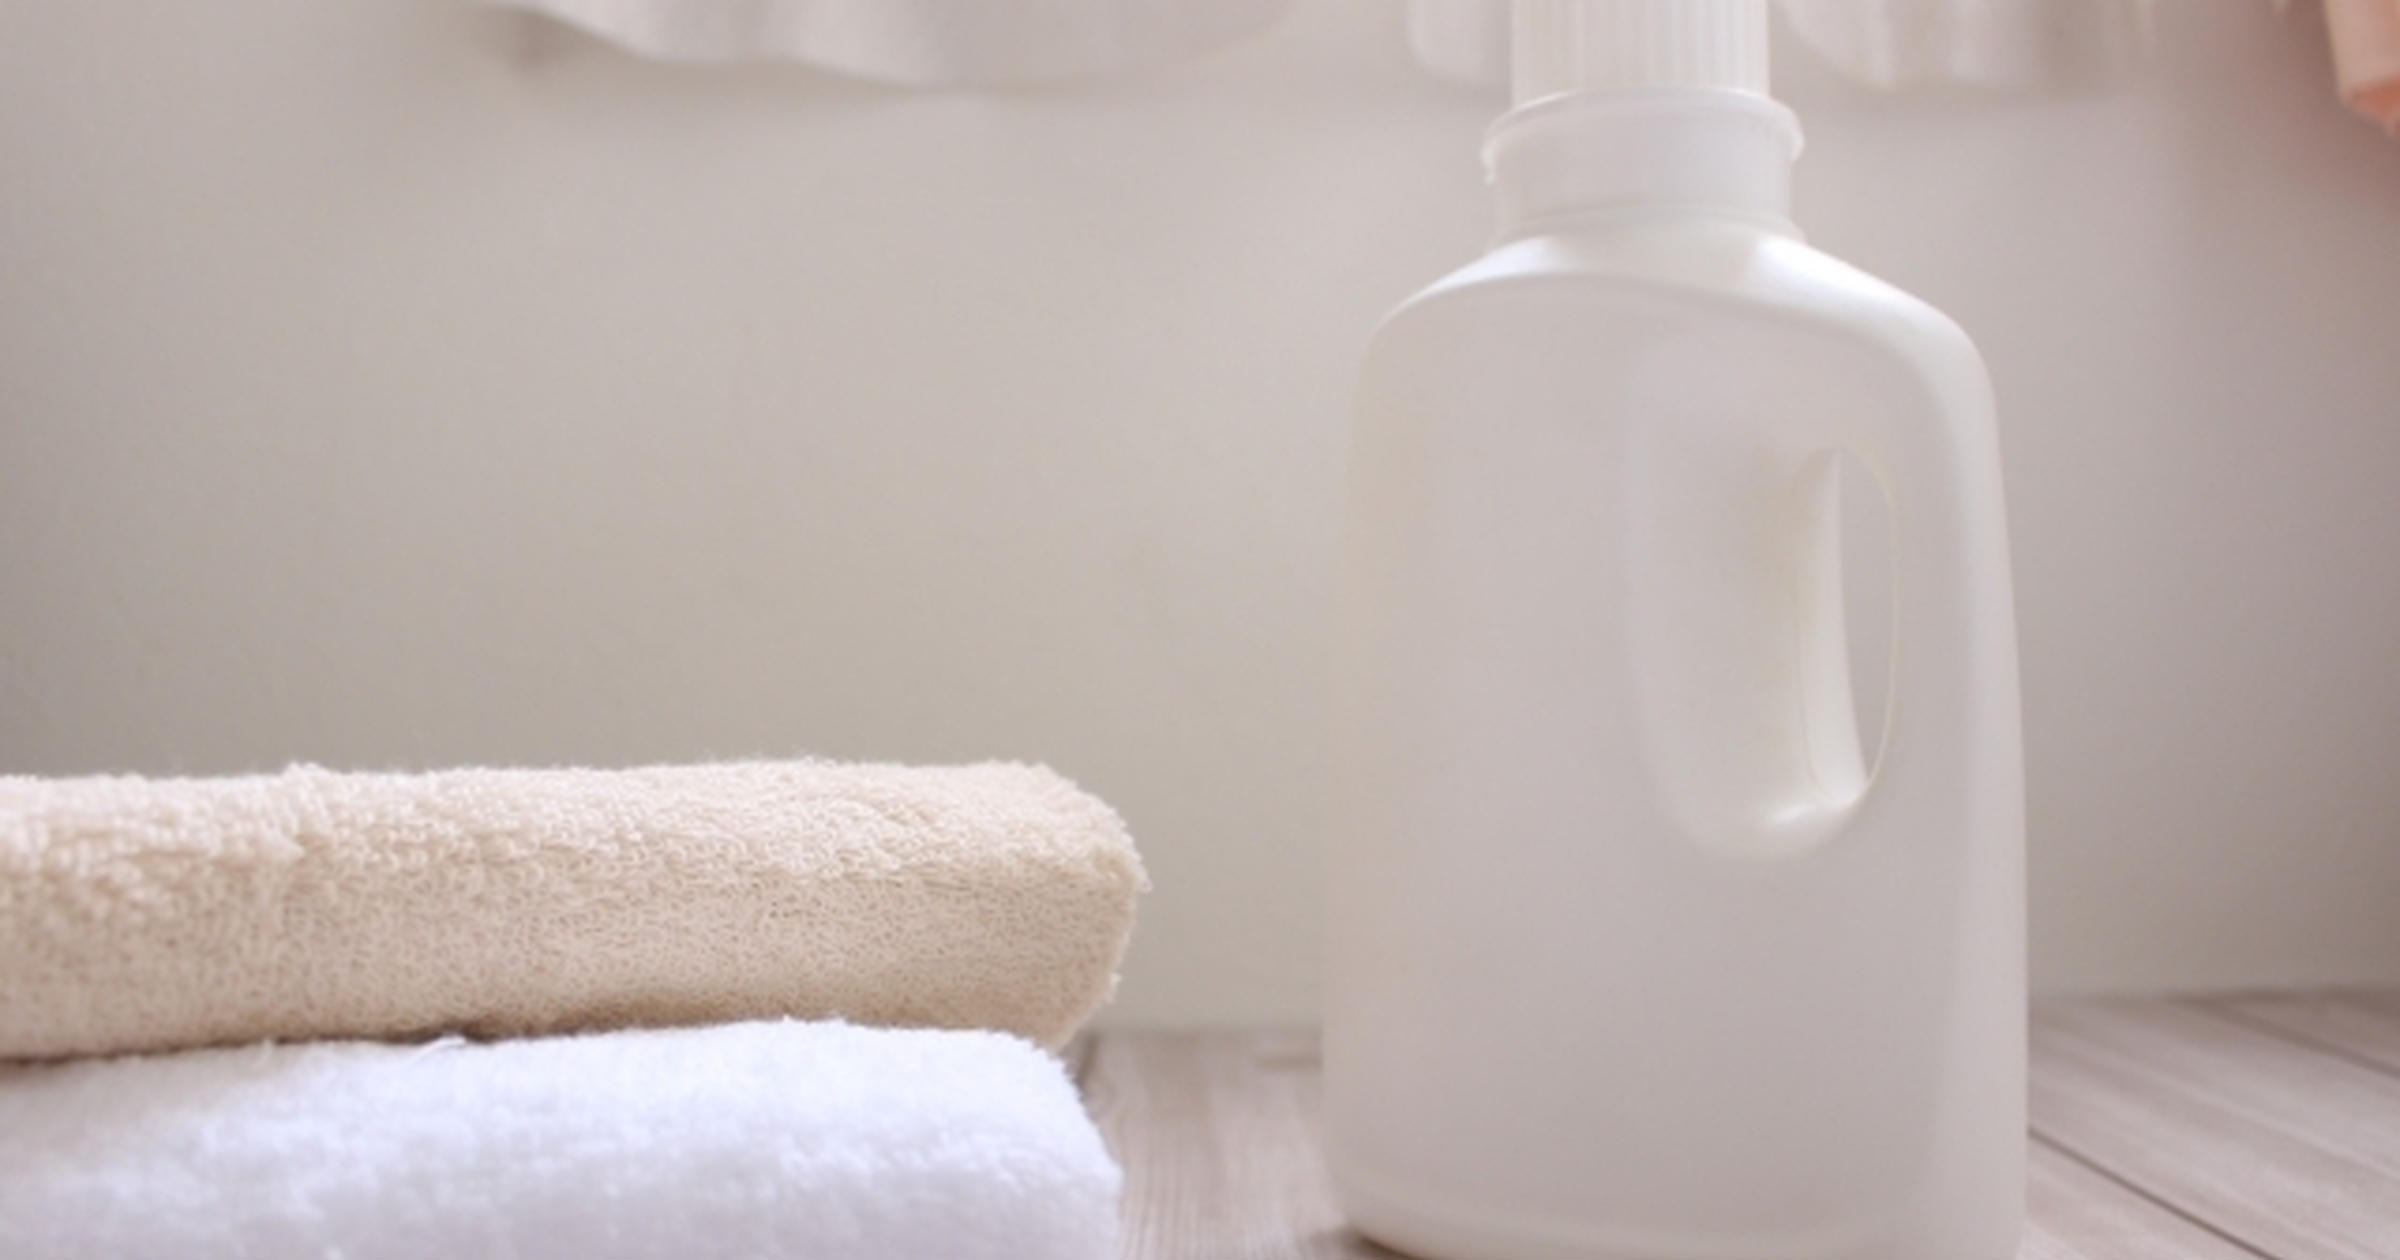 蛍光増白剤フリー」の洗剤とはｰｰ賢く使いこなして洗濯上手に - トクバイニュース